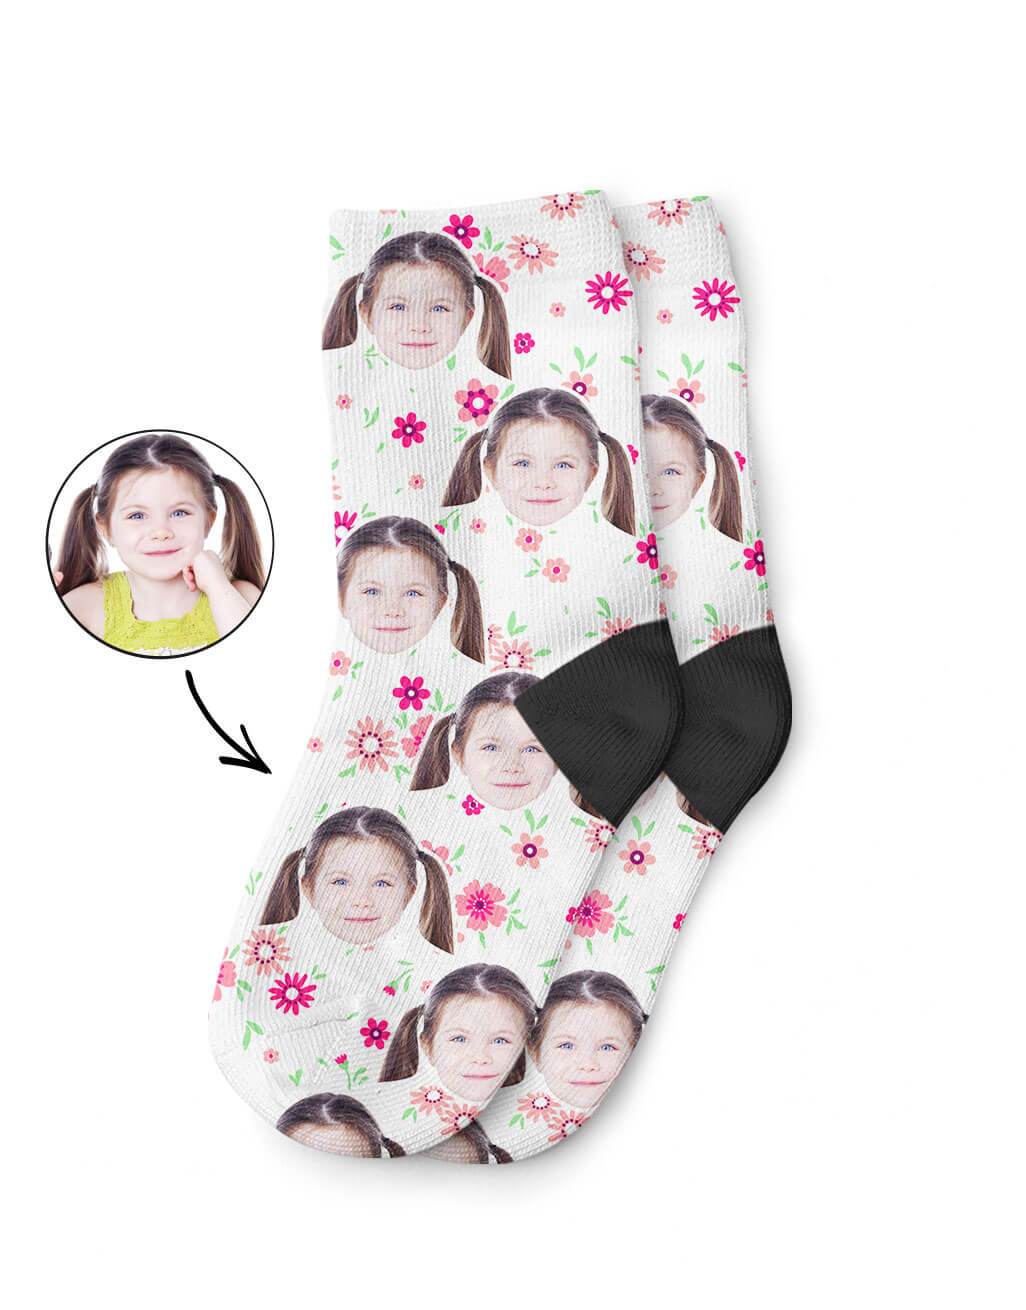 Flower Face Kids Socks